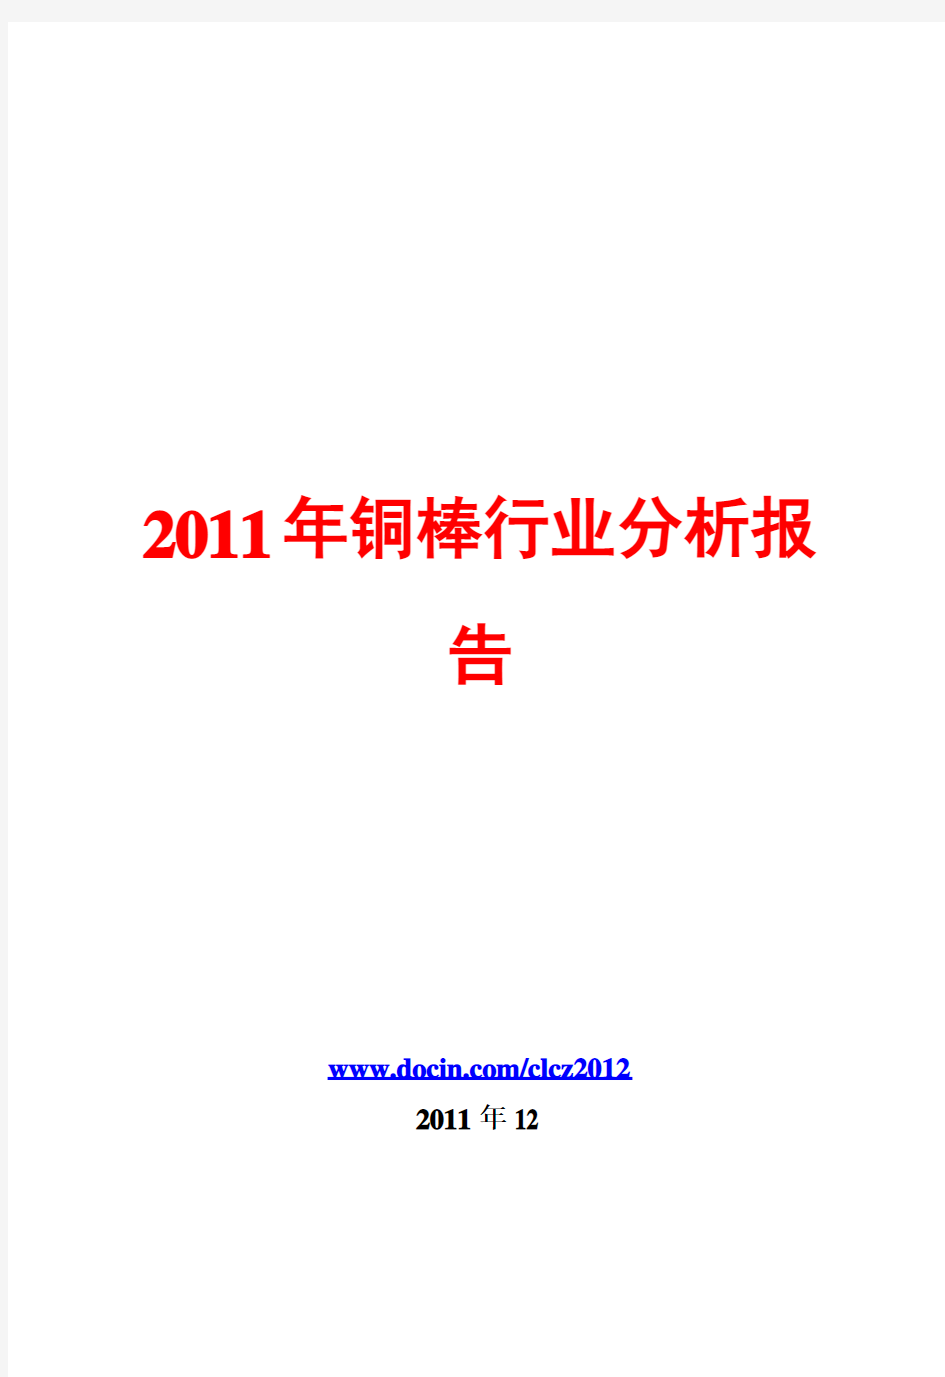 铜棒行业分析报告2011